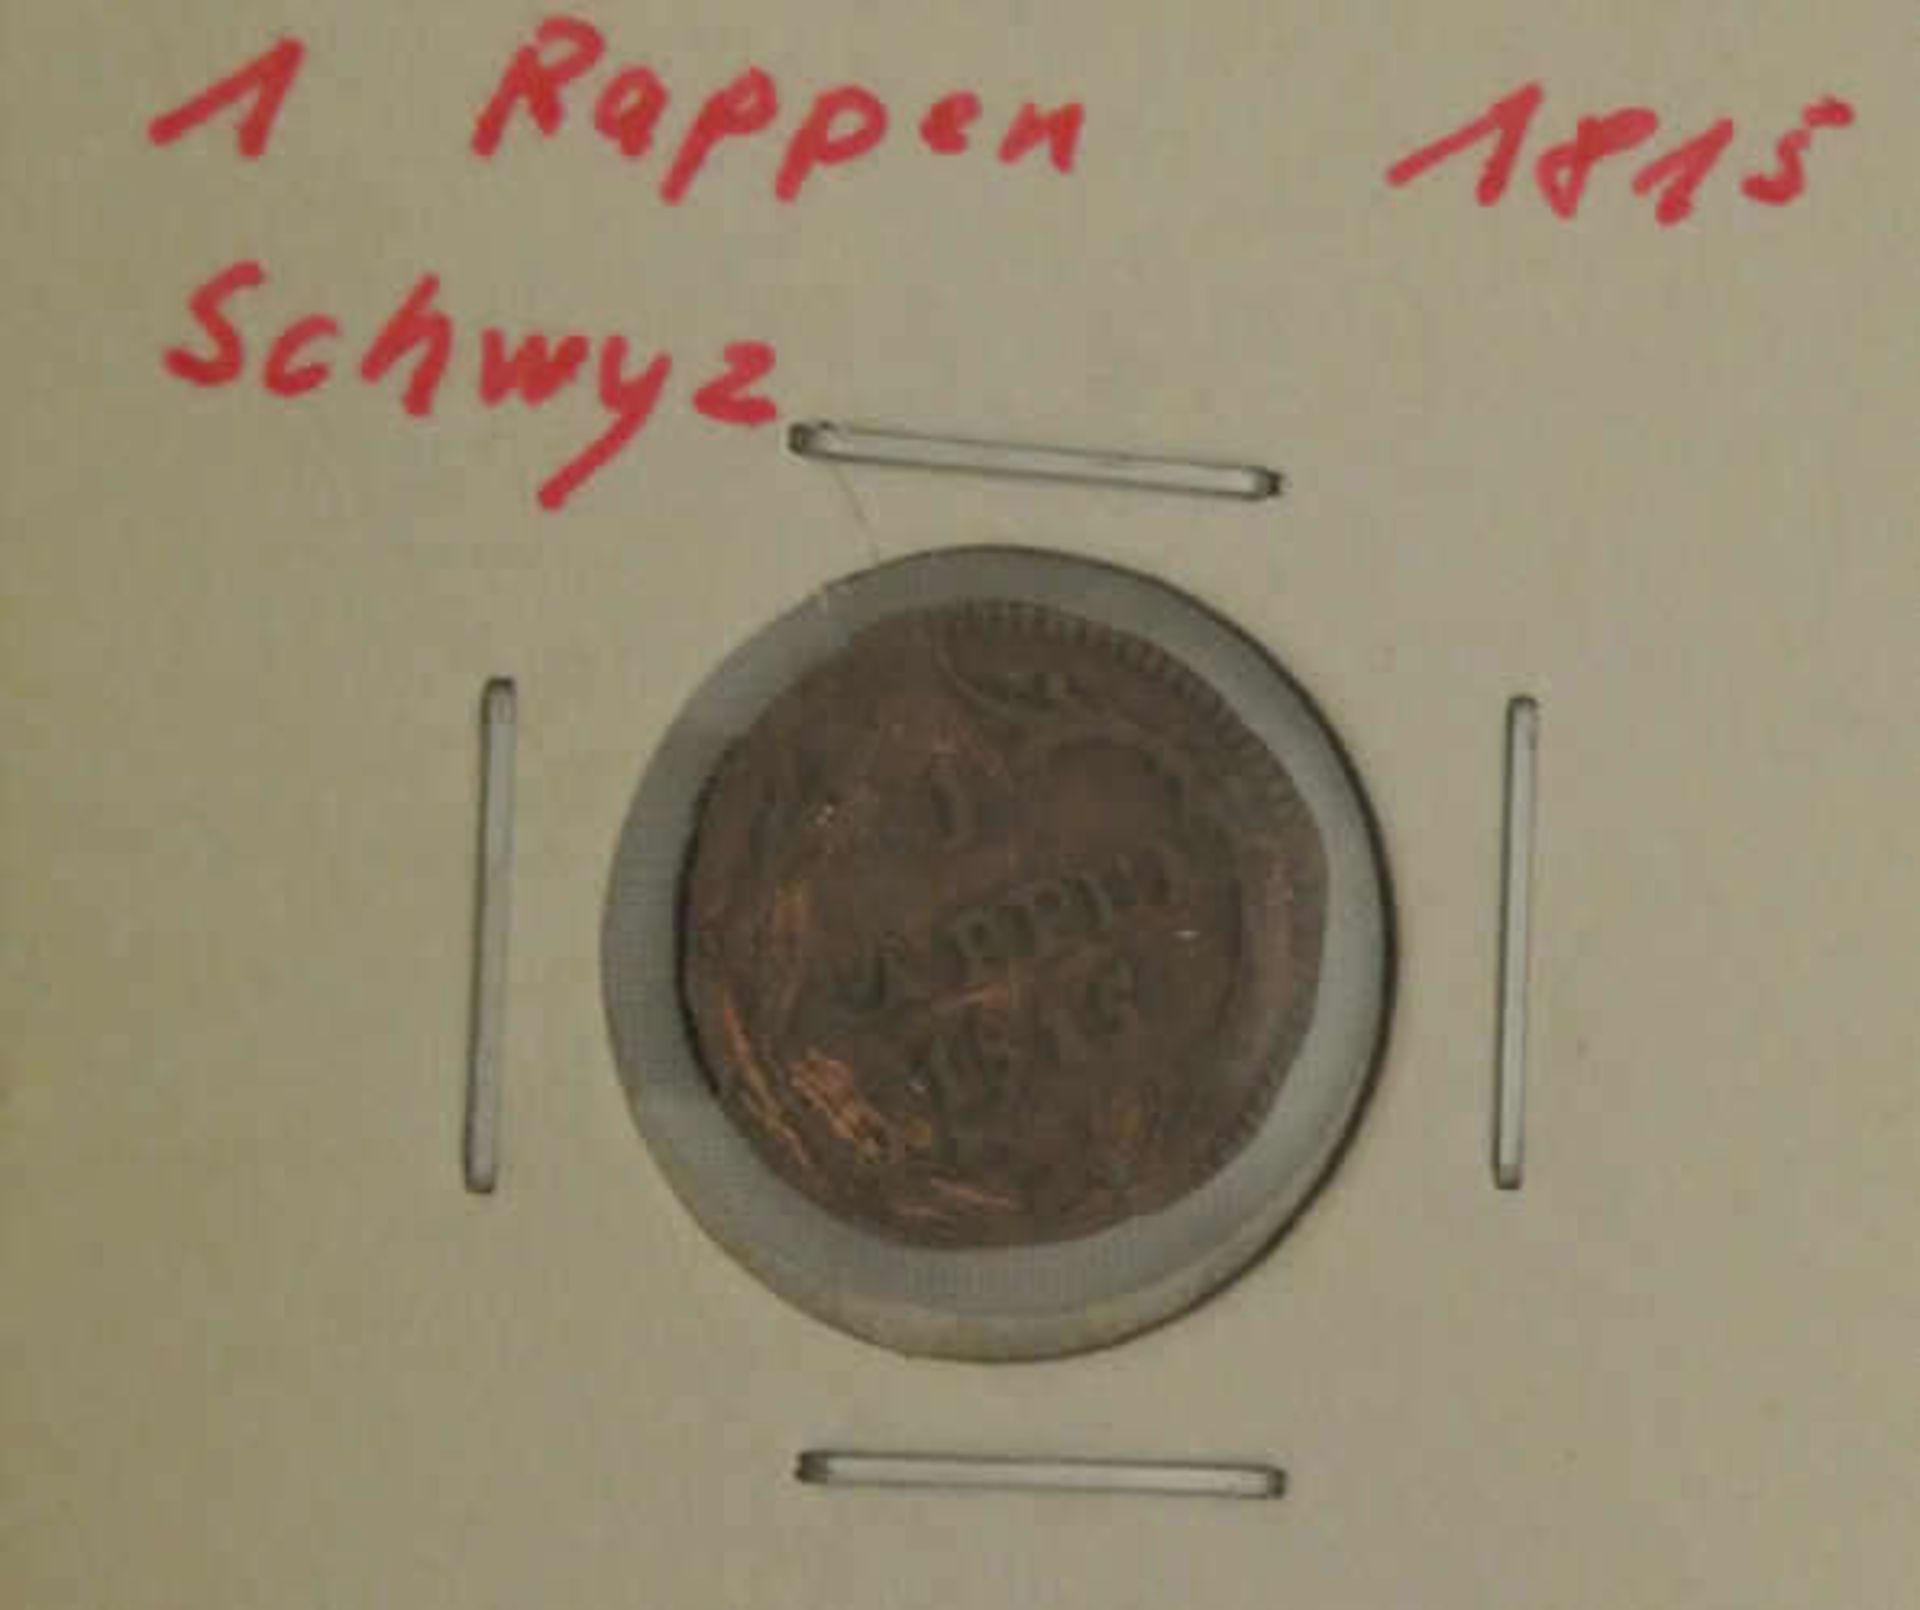 Kantonsmünze Schwyz, 1 Rappen 1815 Erhaltung: sehr schön - Bild 2 aus 2